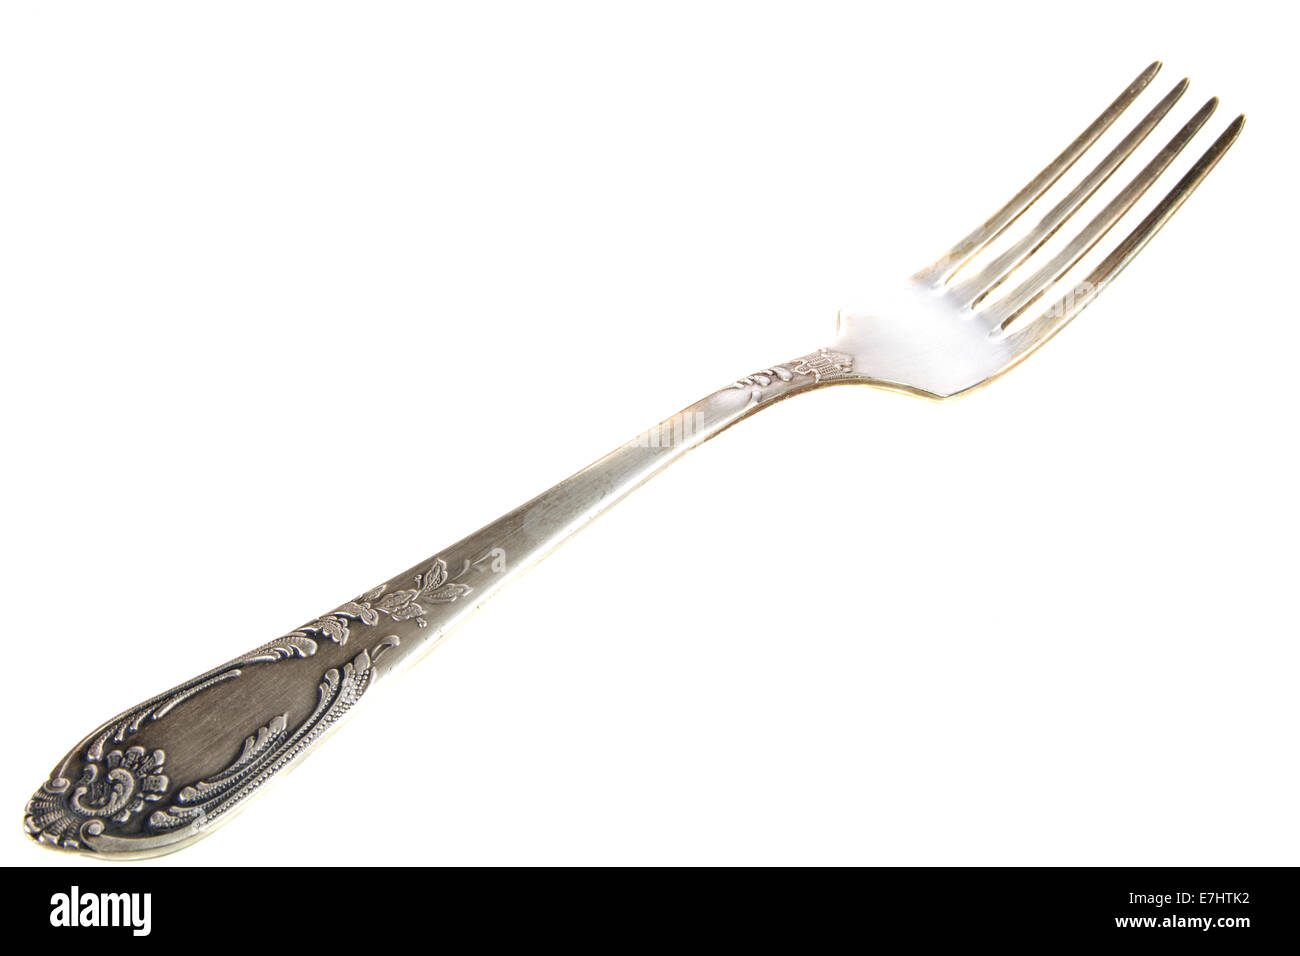 Old silver fork avec ornements sur fond blanc isolé Banque D'Images